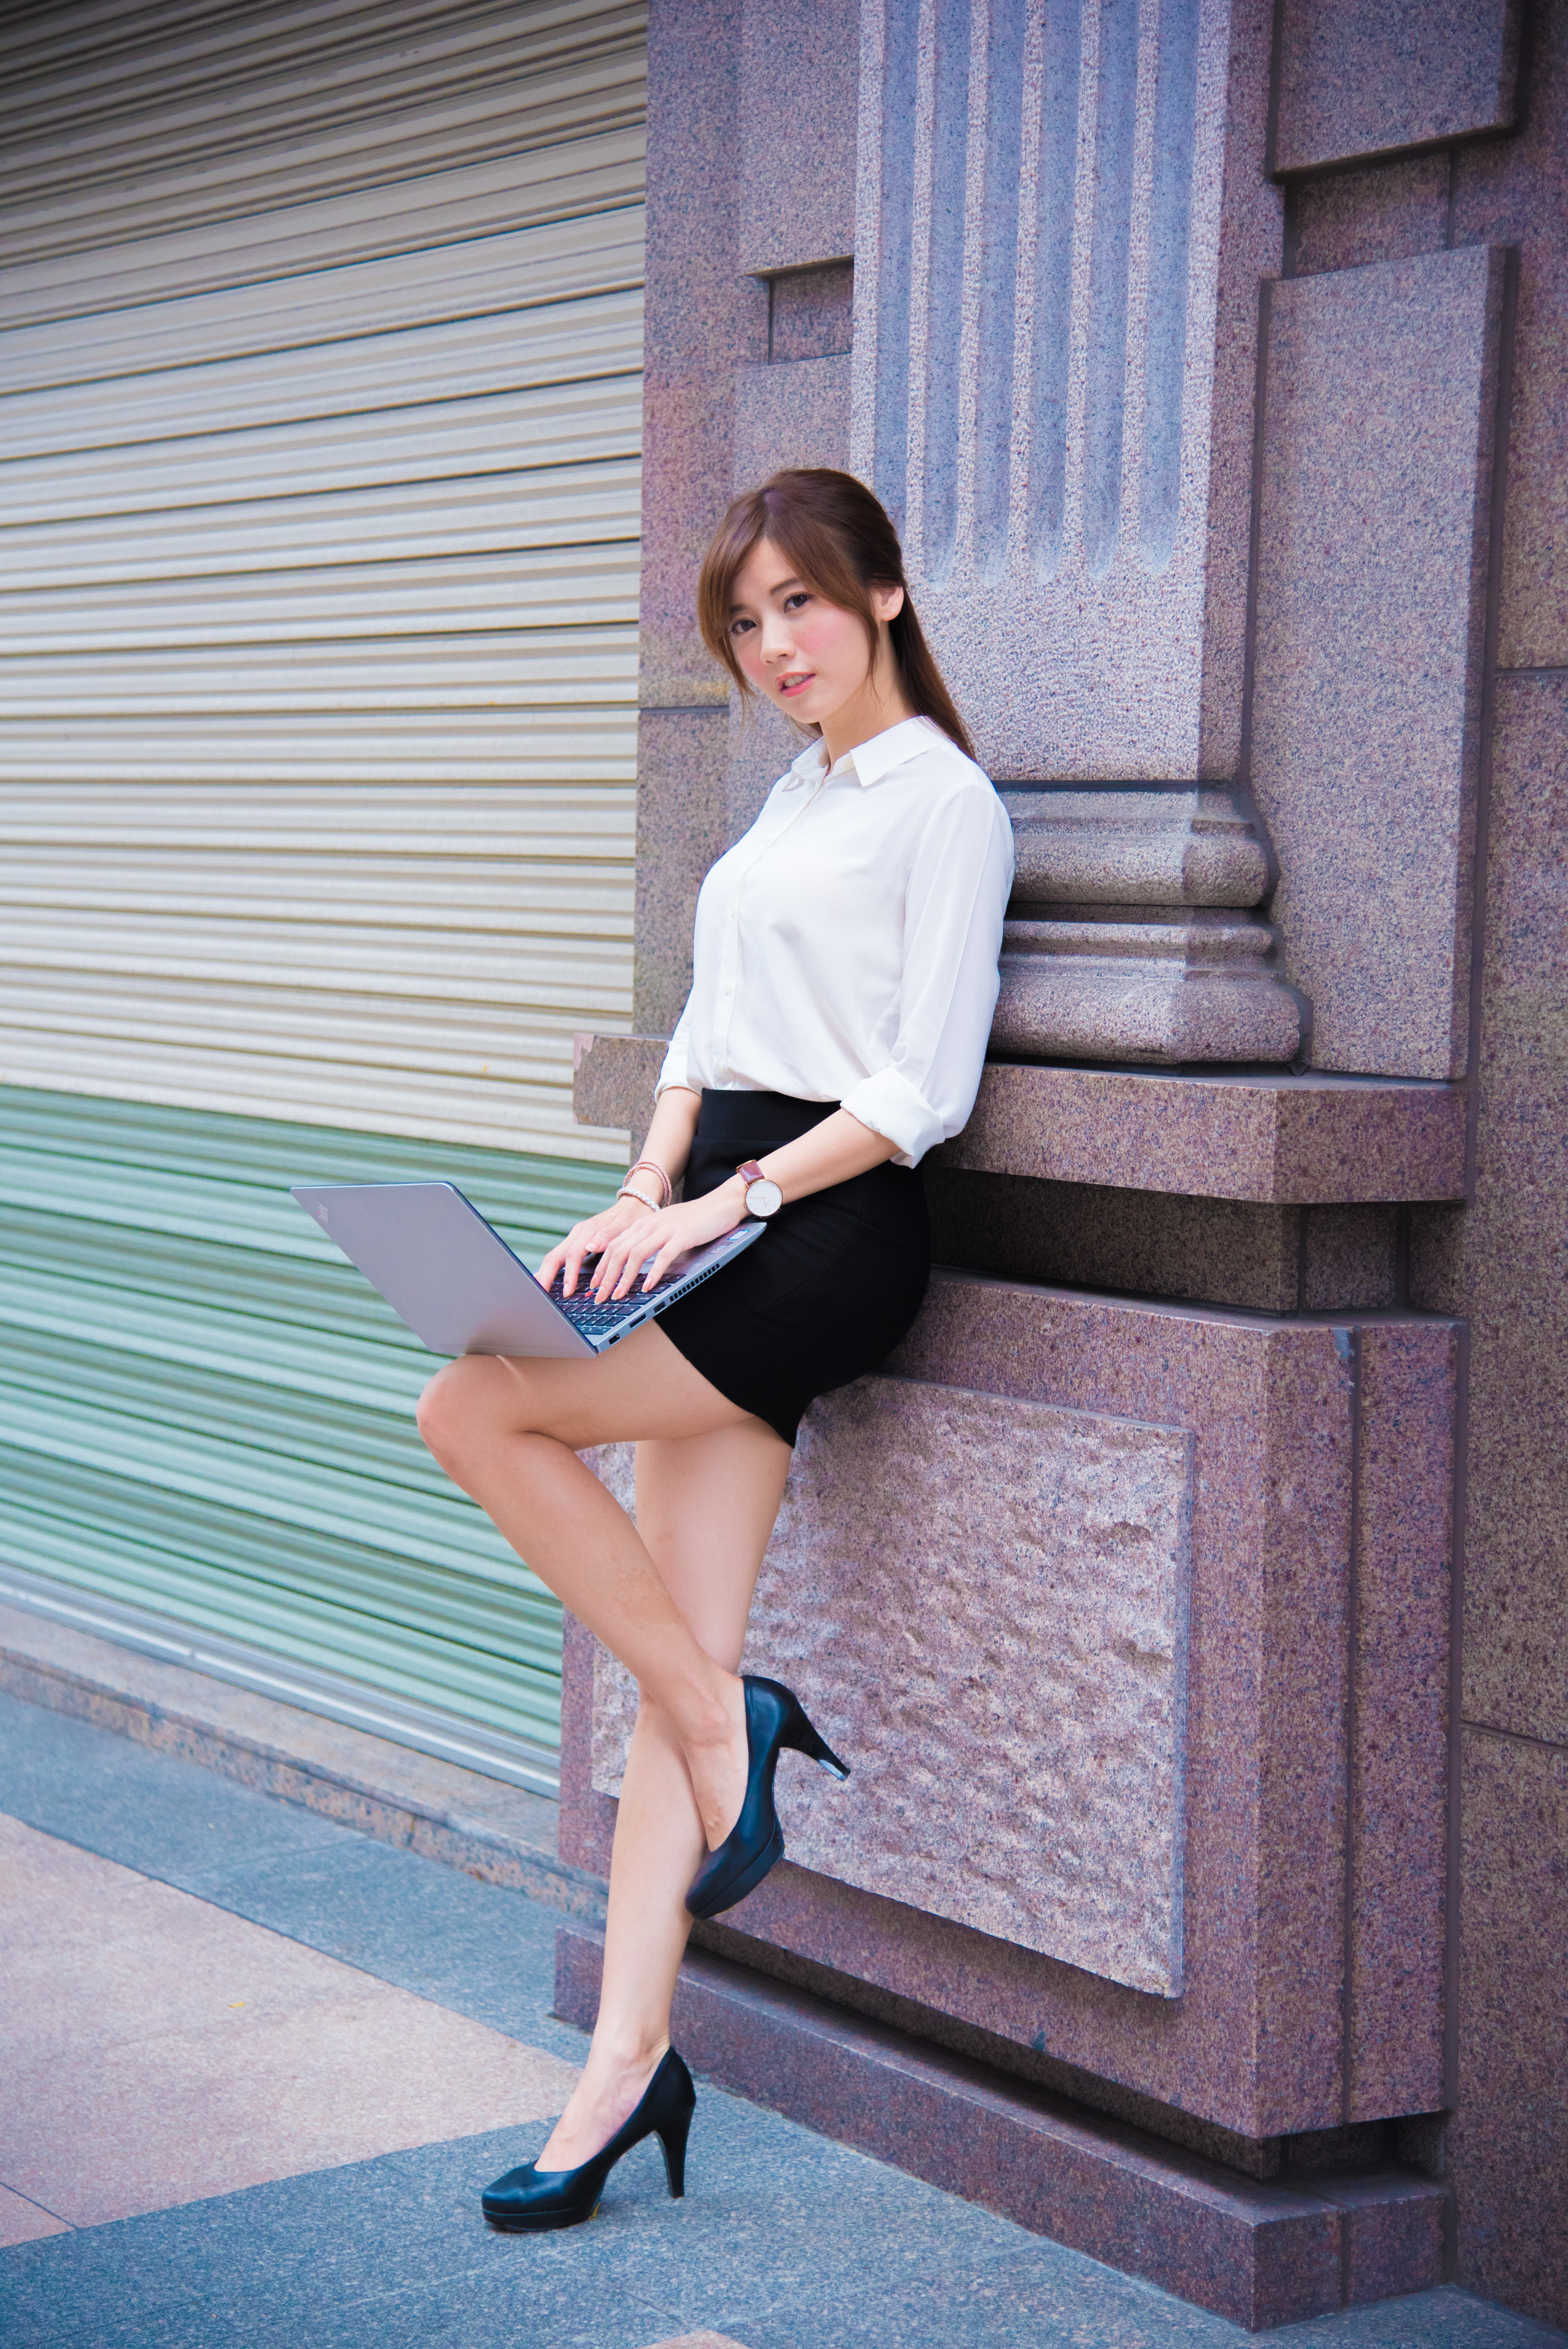 People 4016x6016 women model Asian brunette heels black skirts white shirt office girl long hair